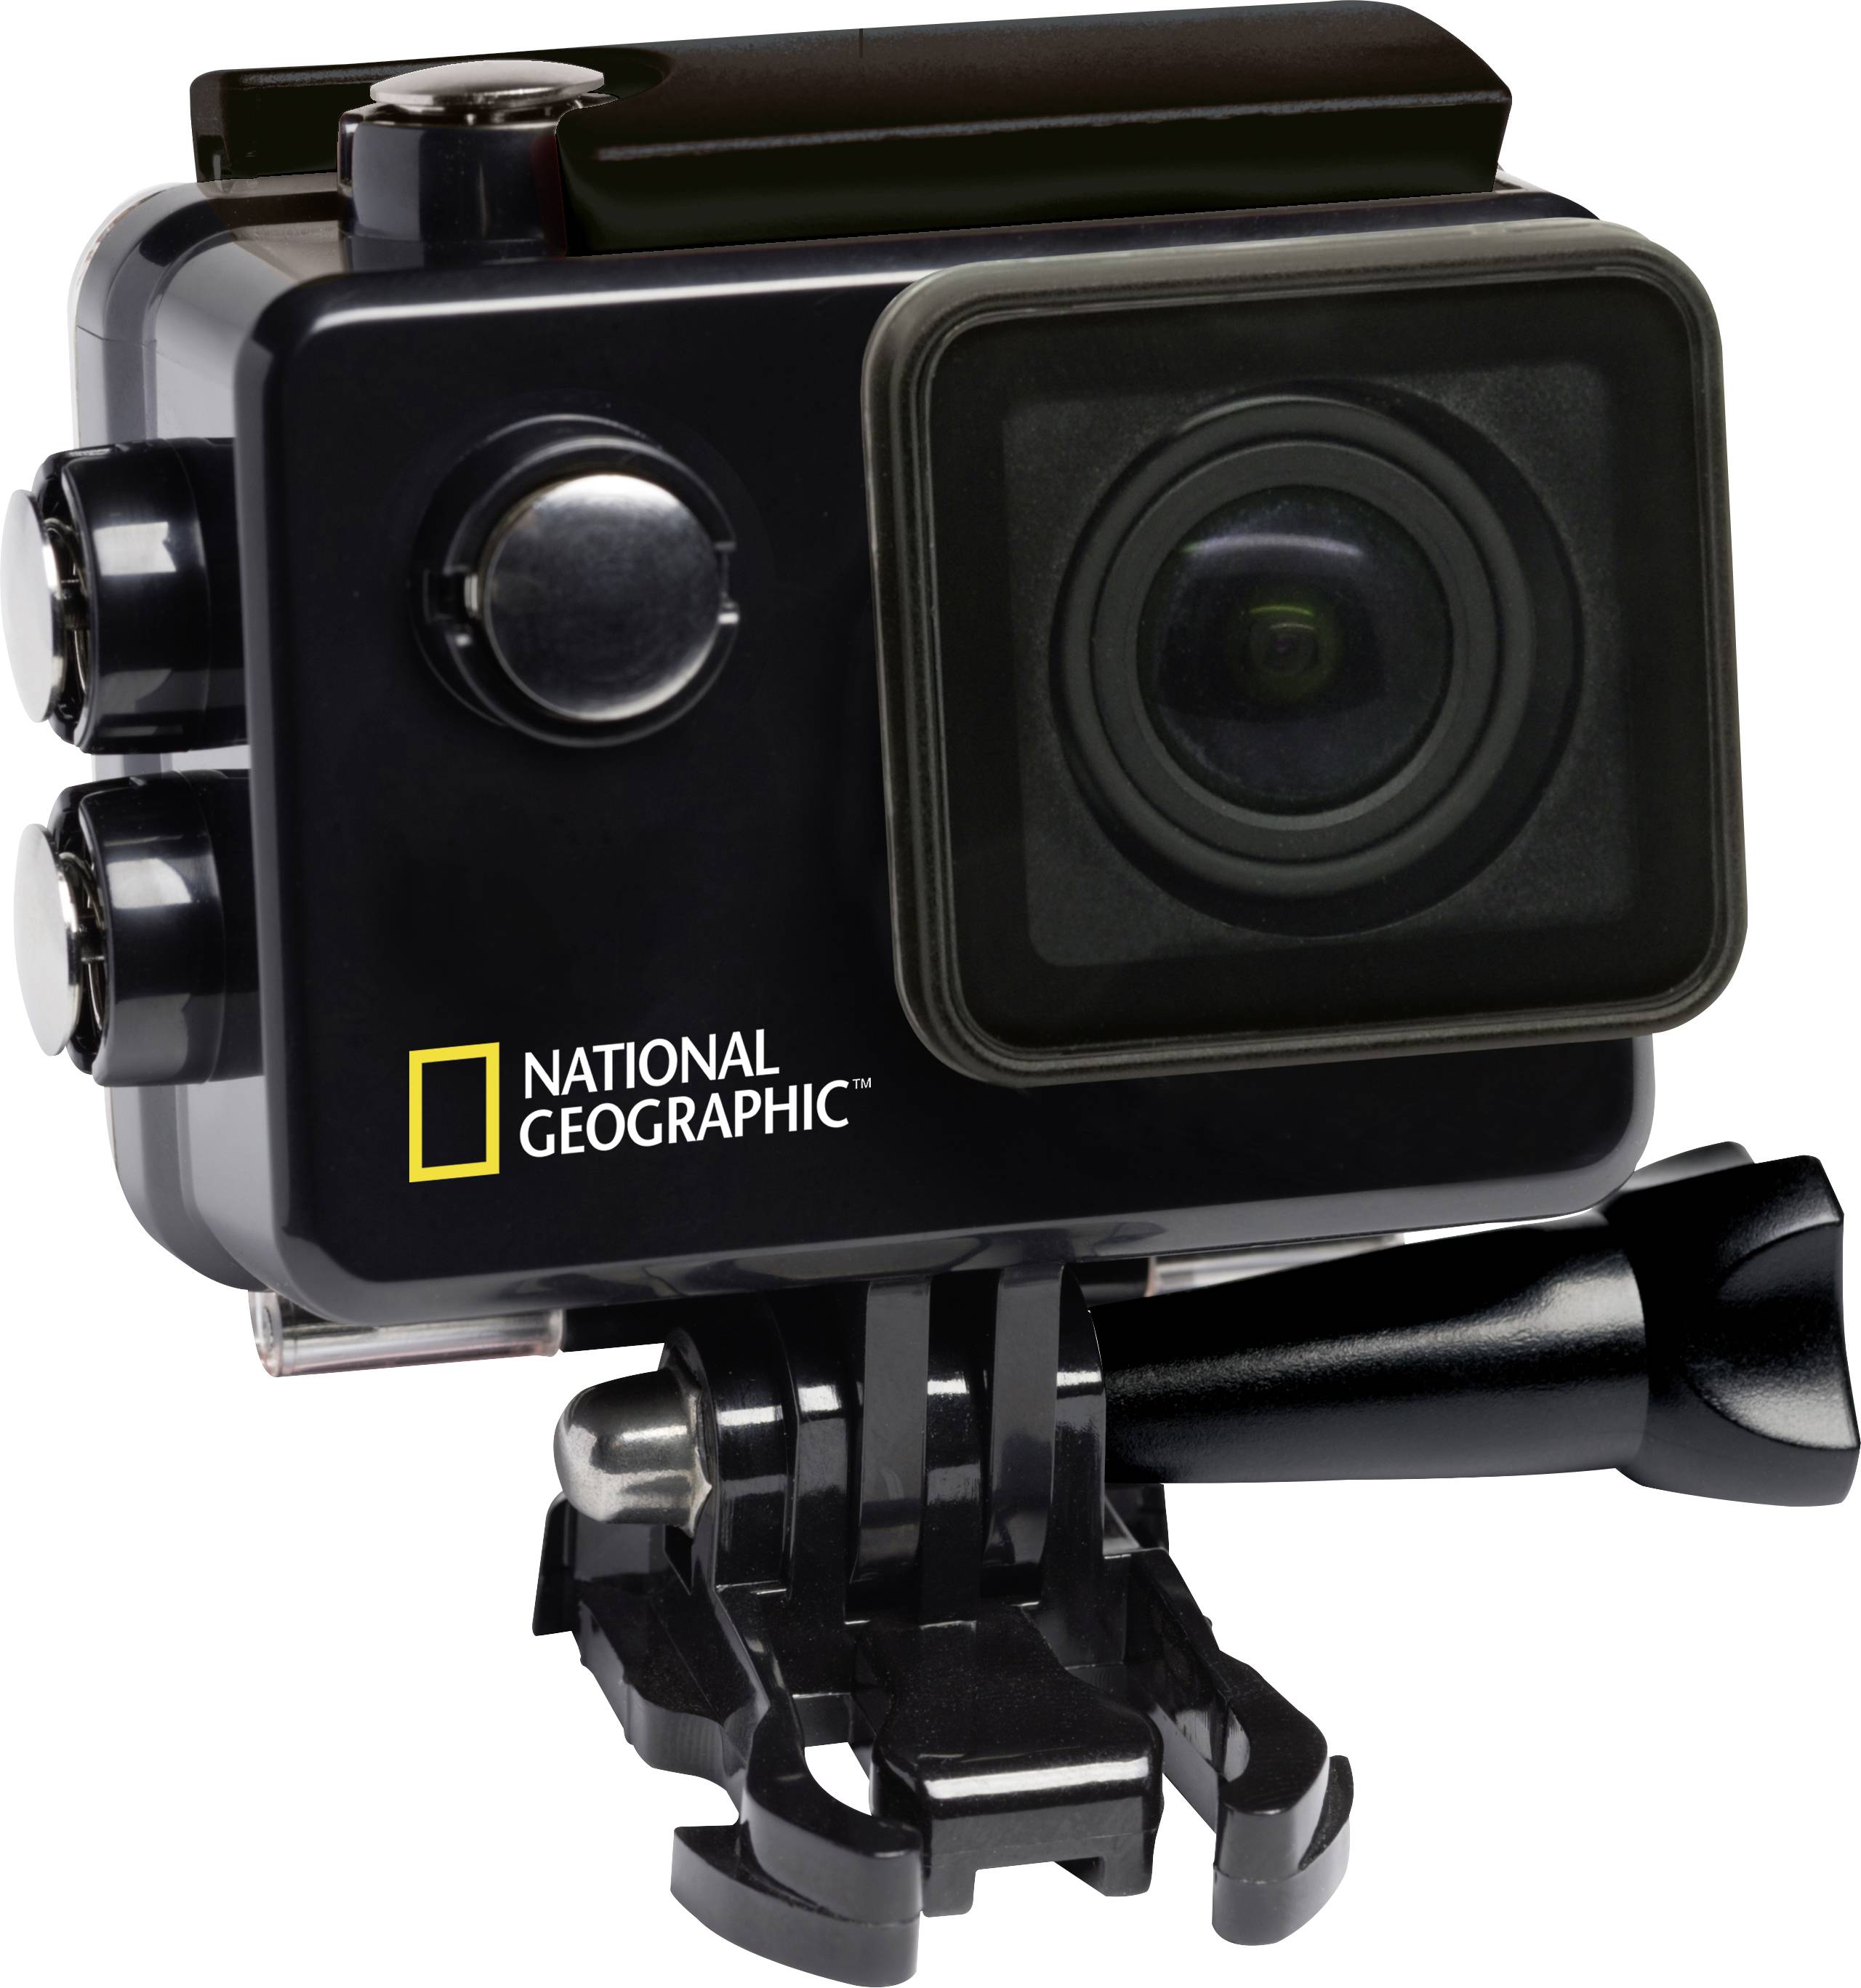 Disfraz El aparato esfera National Geographic 4K Ultra-HD WLAN Explorer 3 Action camera 4K, Wi-Fi,  Waterproof | Conrad.com